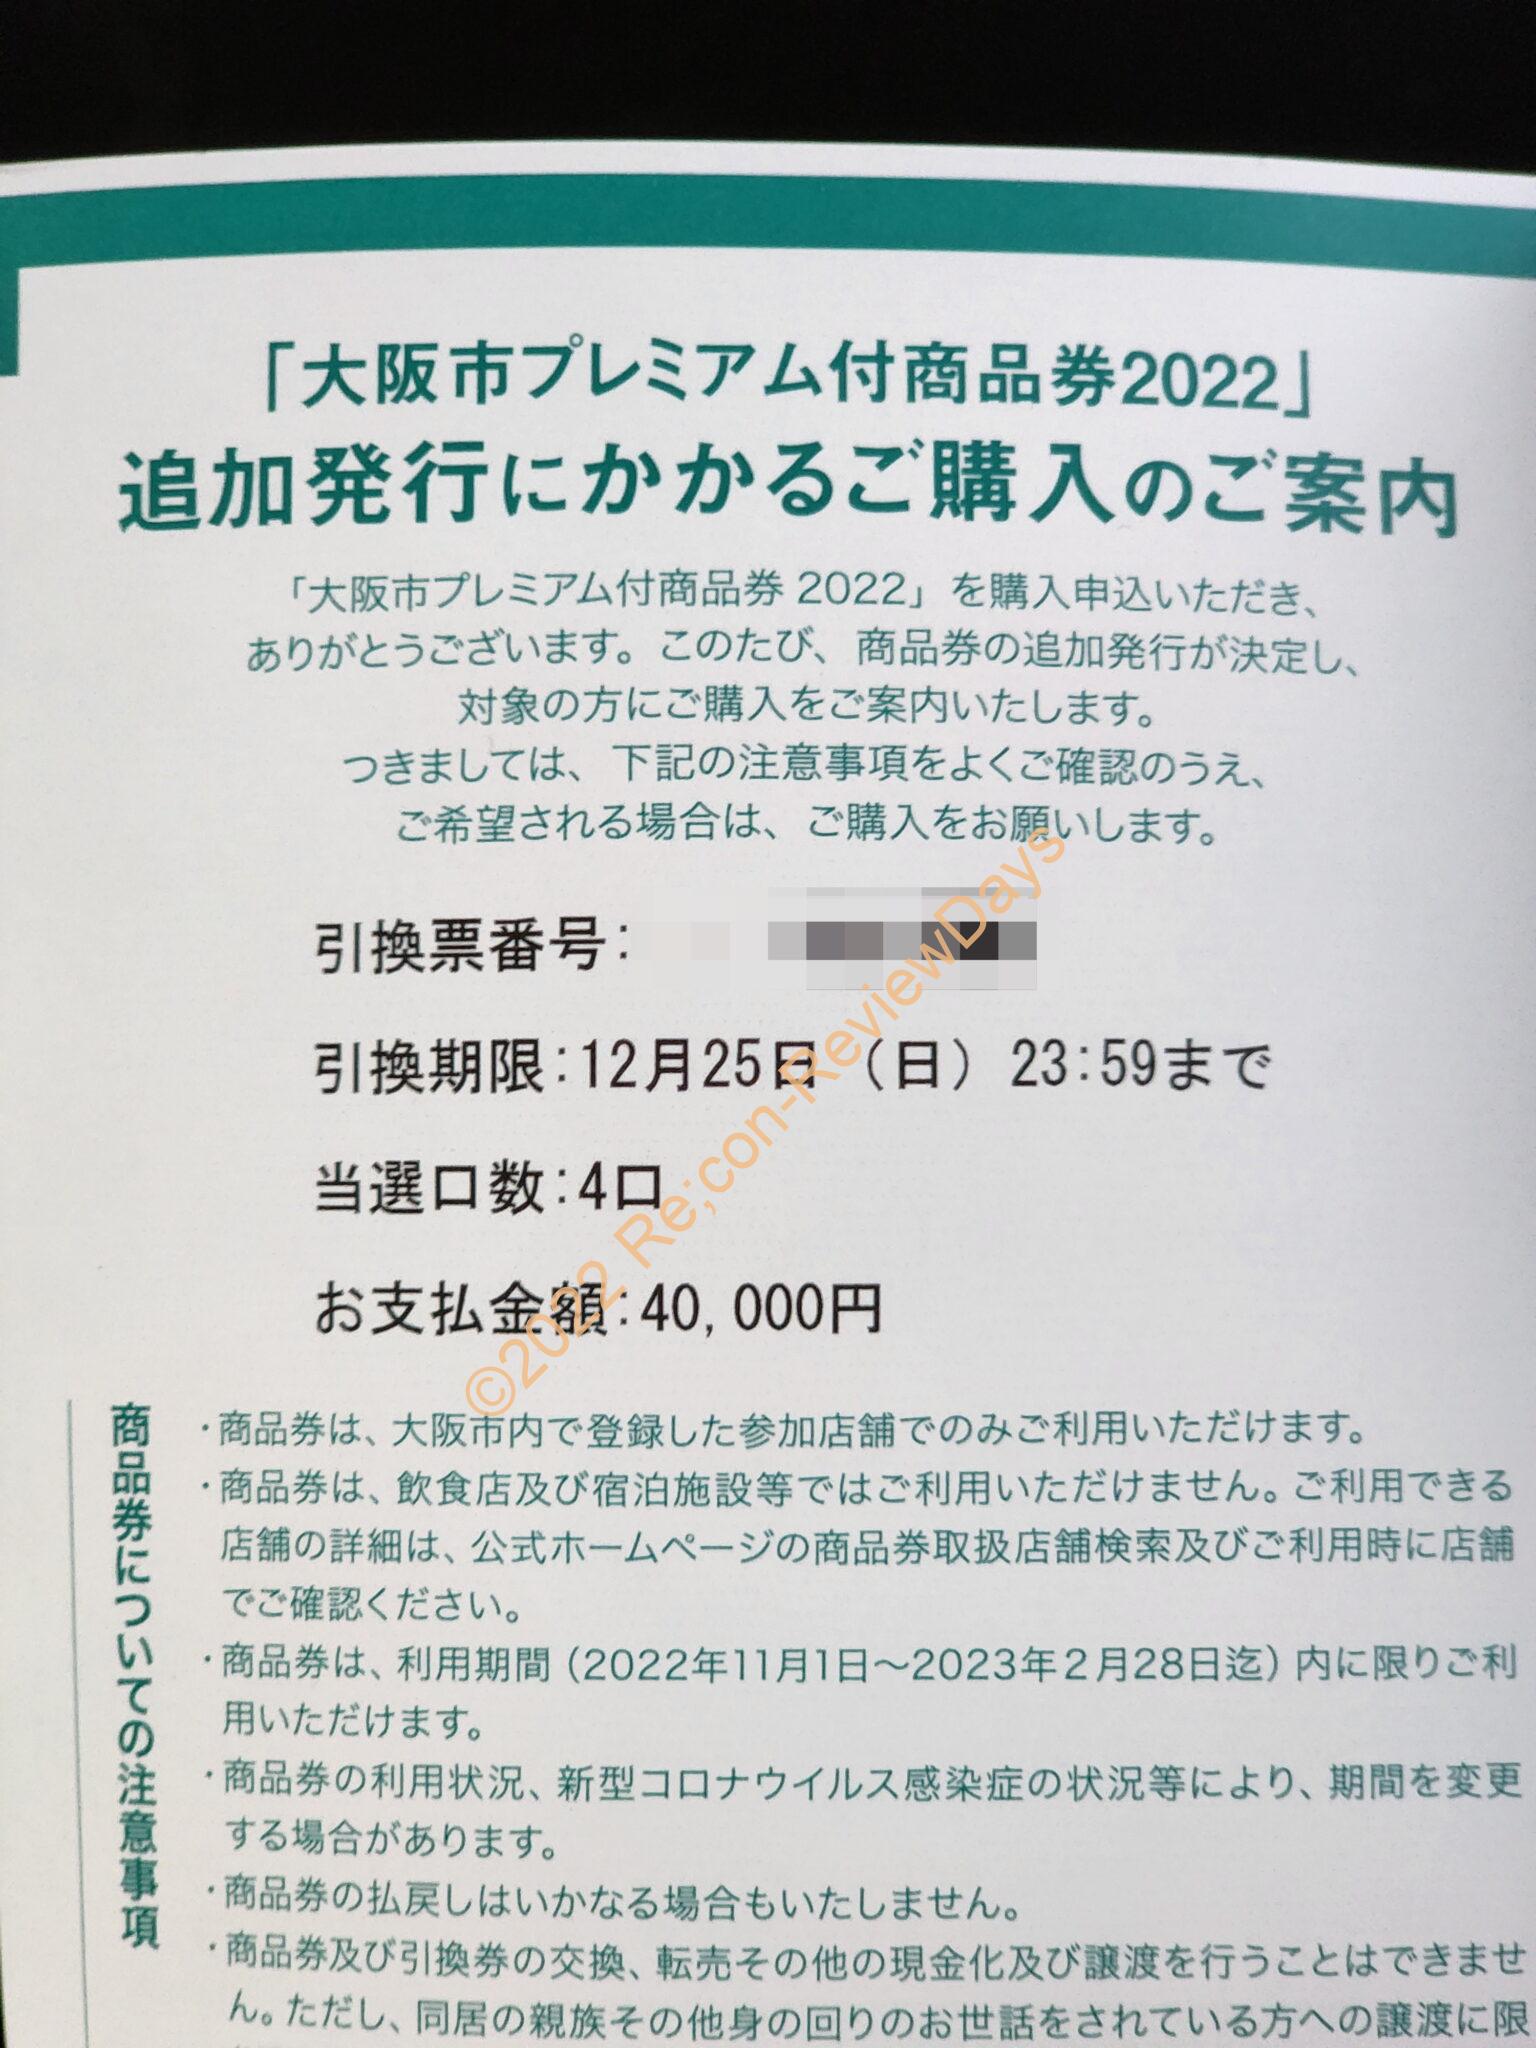 大阪市プレミアム付商品券2022の当選ハガキが届きました #大阪市 #大阪市プレミアム付商品券2022